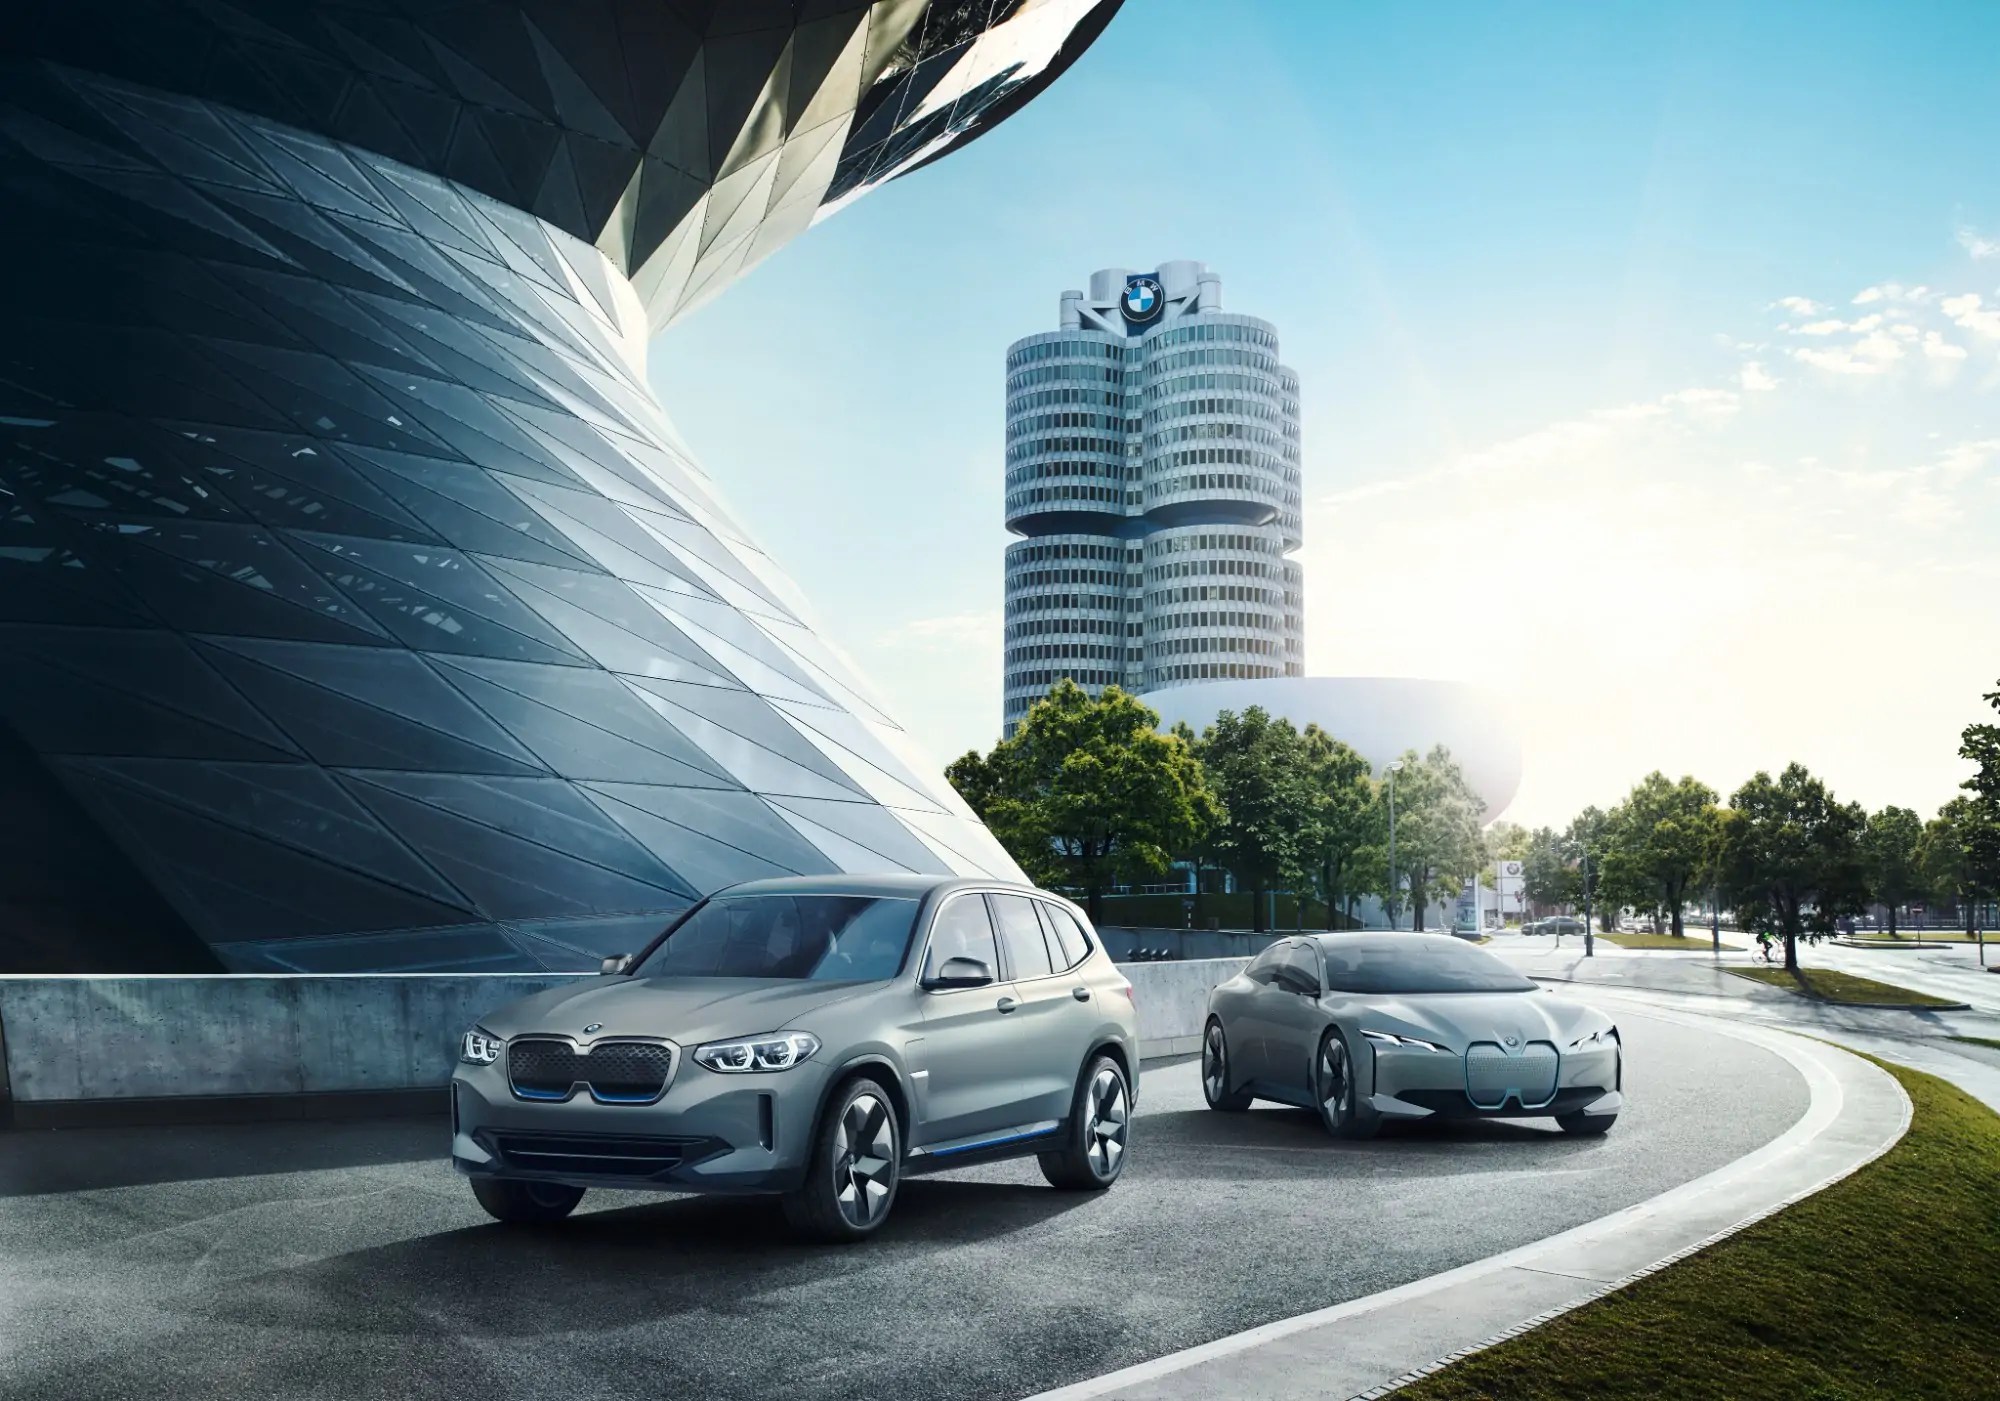 مجموعة BMW تحدد استراتيجيتها في ظل الاوضاع الاقتصادية المتأزمة